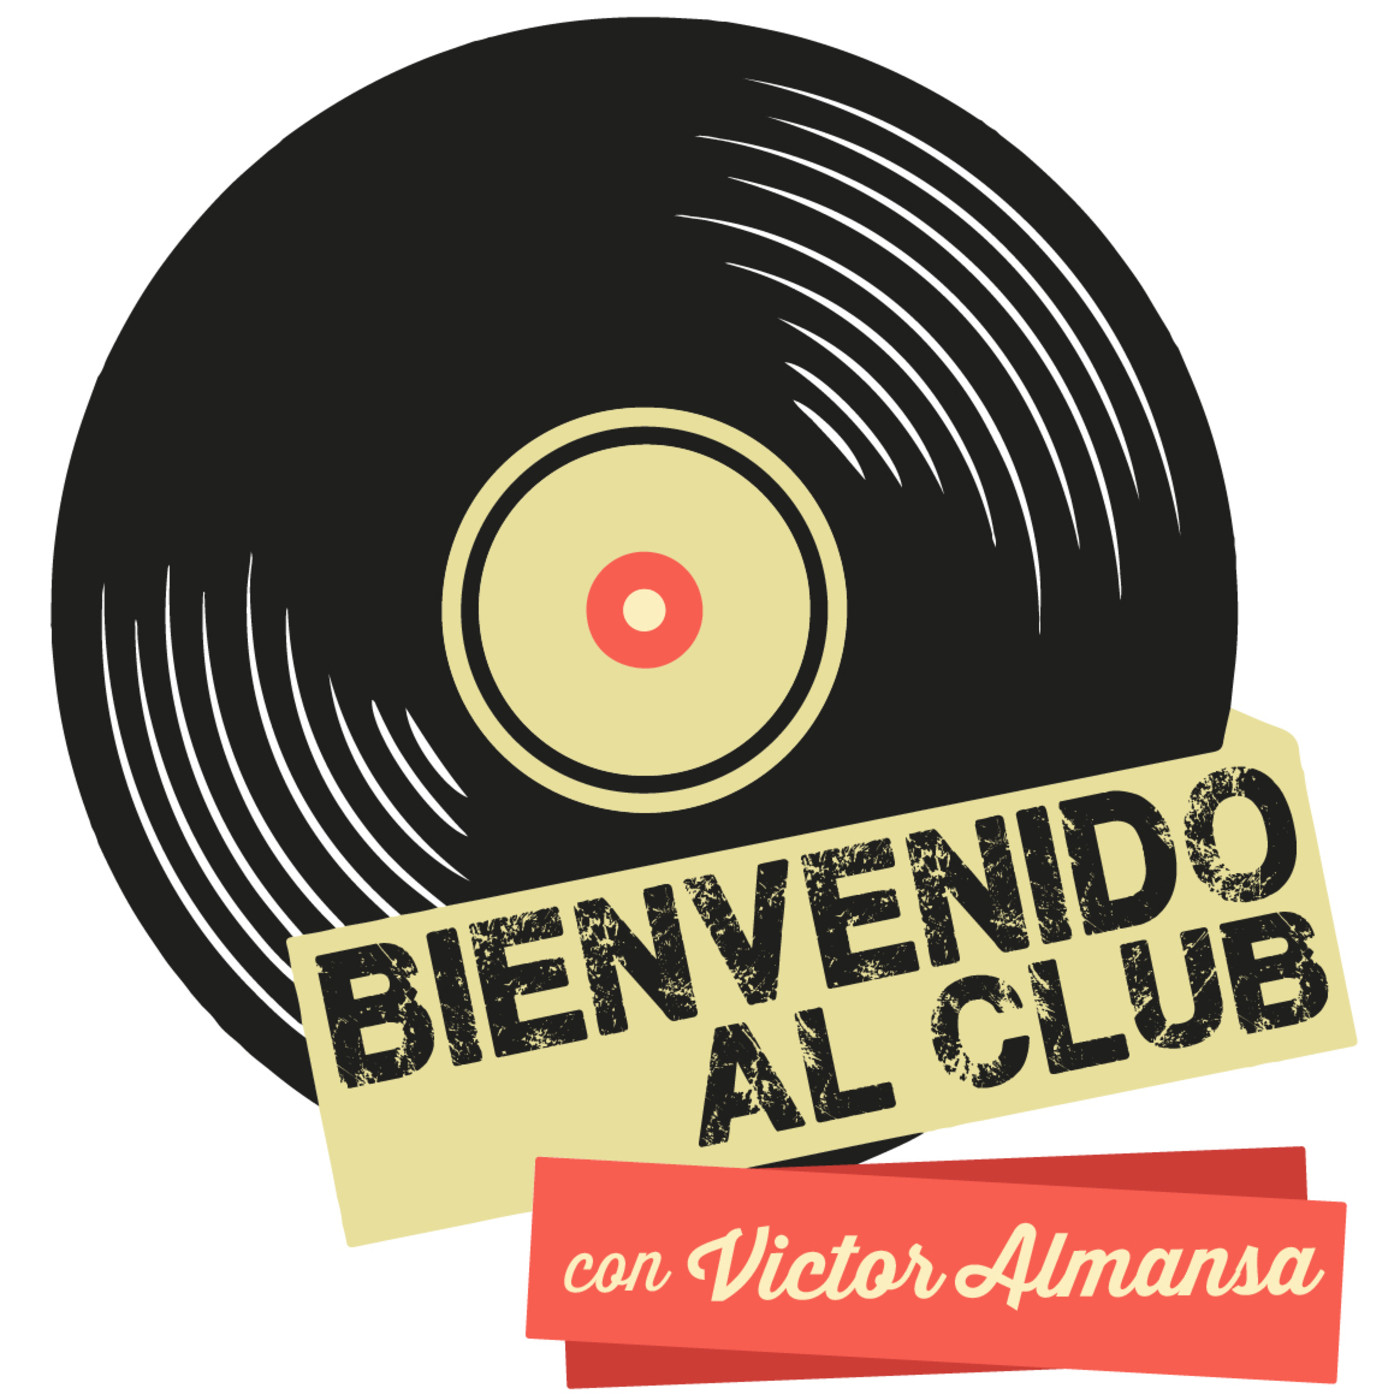 Bienvenido al Club con Victor Almansa (Jueves 30 de Enero de 2020)